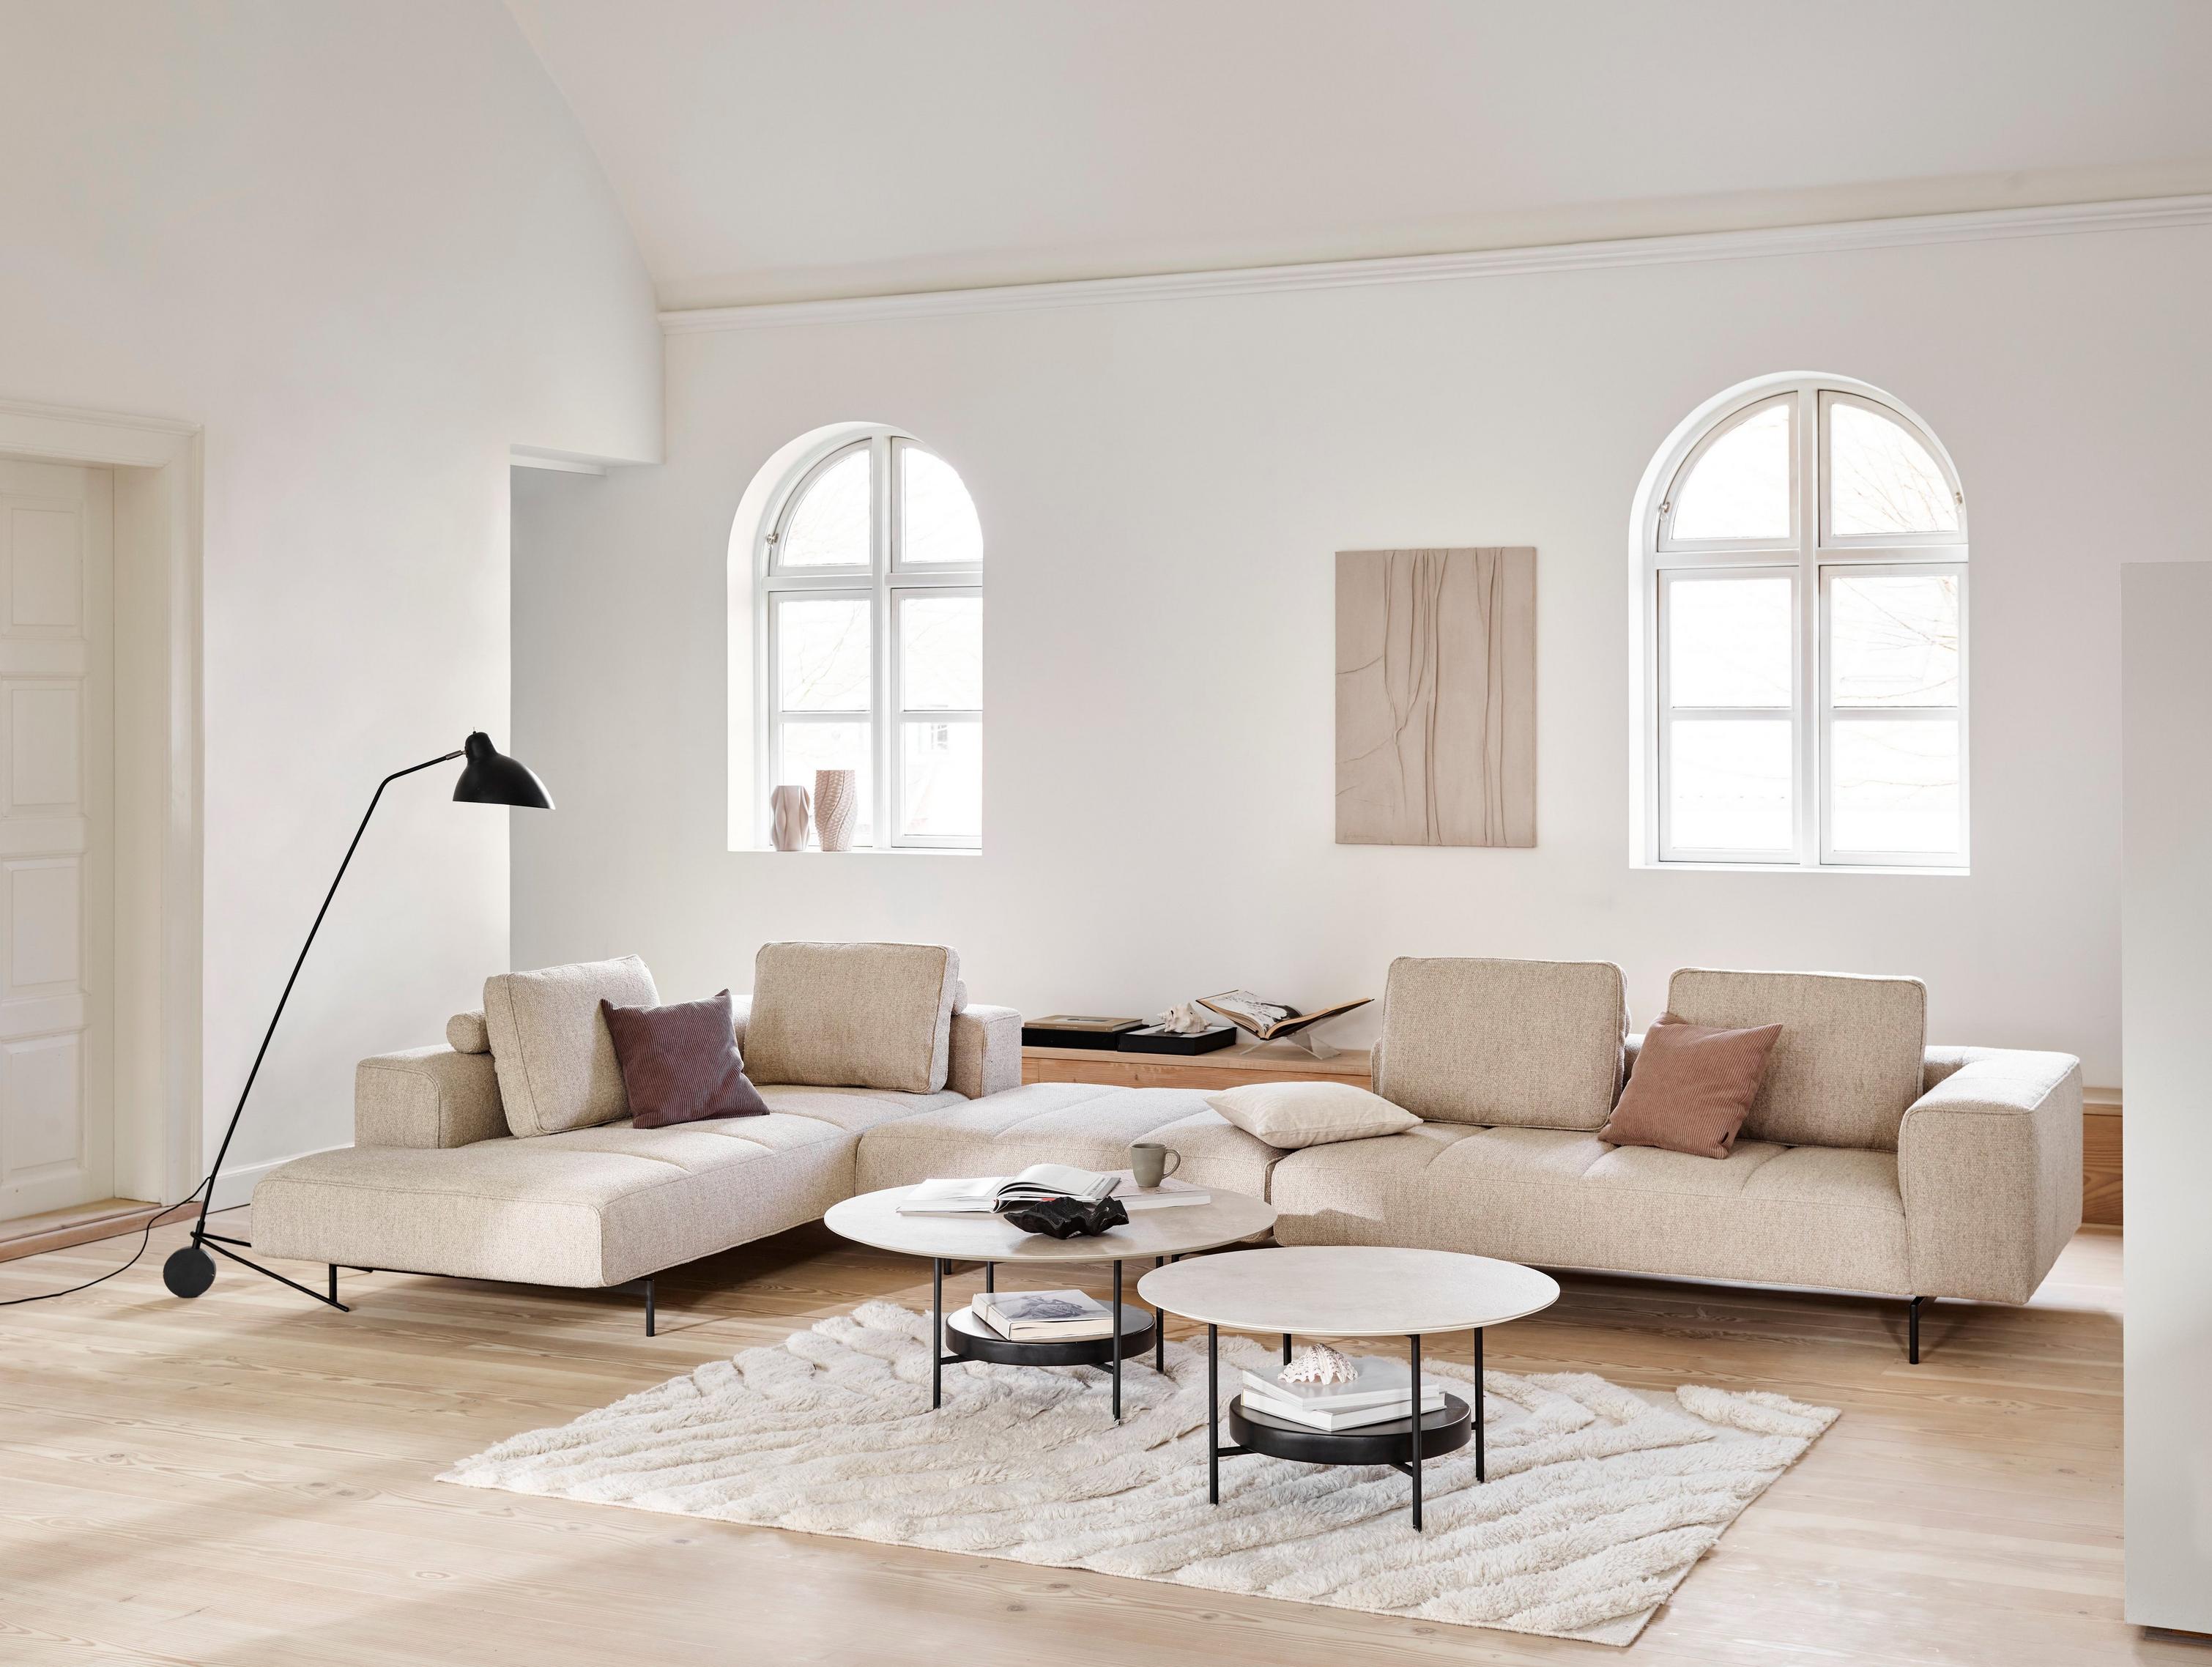 Sofa narożna Amsterdam z modułem wypoczynkowym tapicerowana beżową tkaniną Lazio i stolik kawowy Madrid z popielatą powłoką ceramiczną.